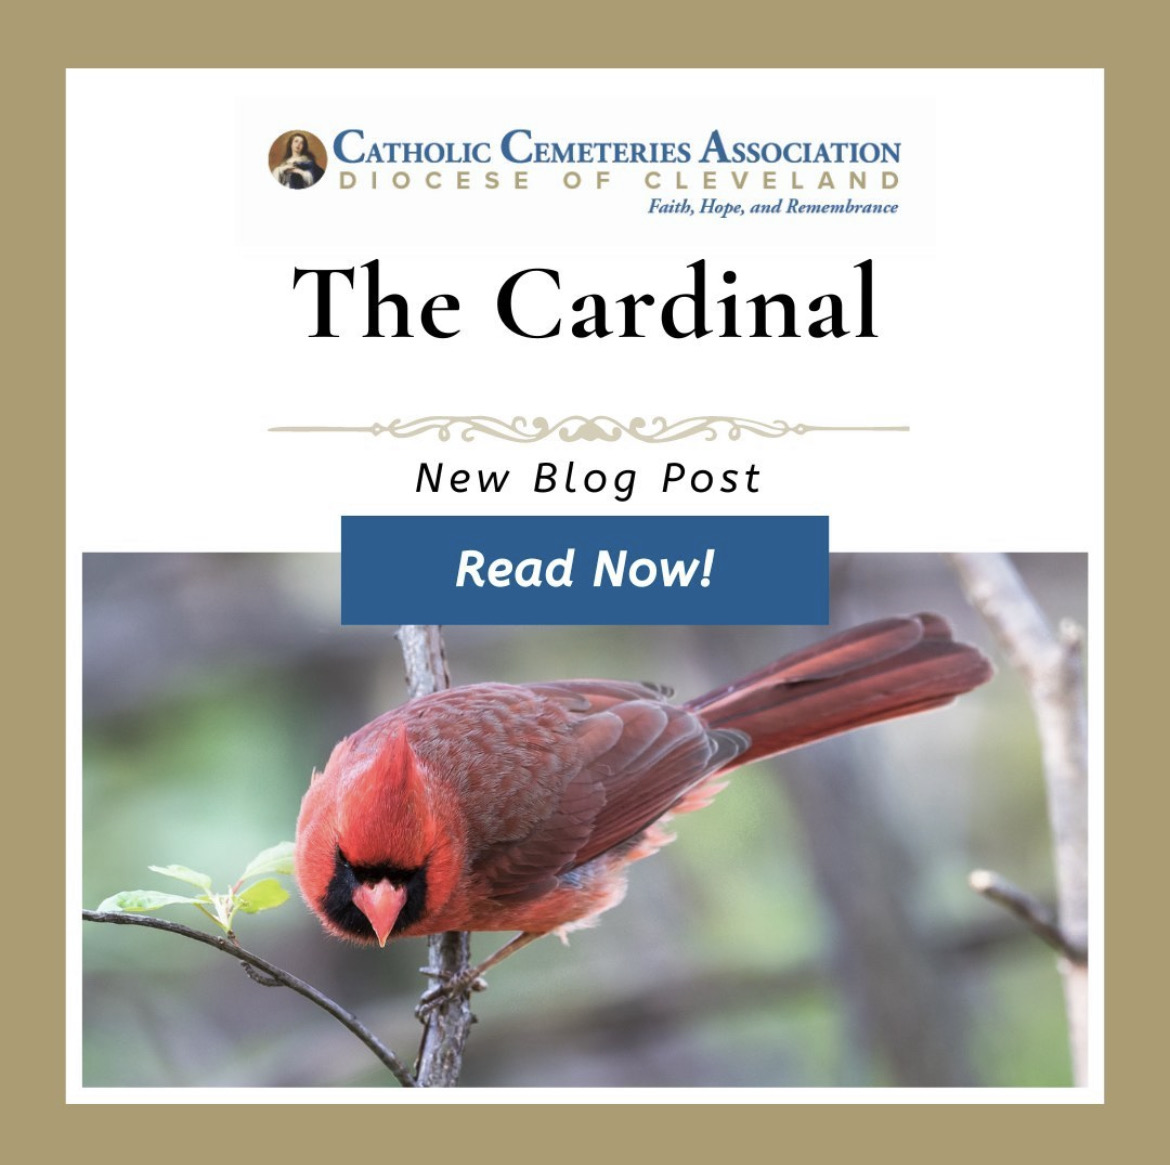 The Cardinal blog